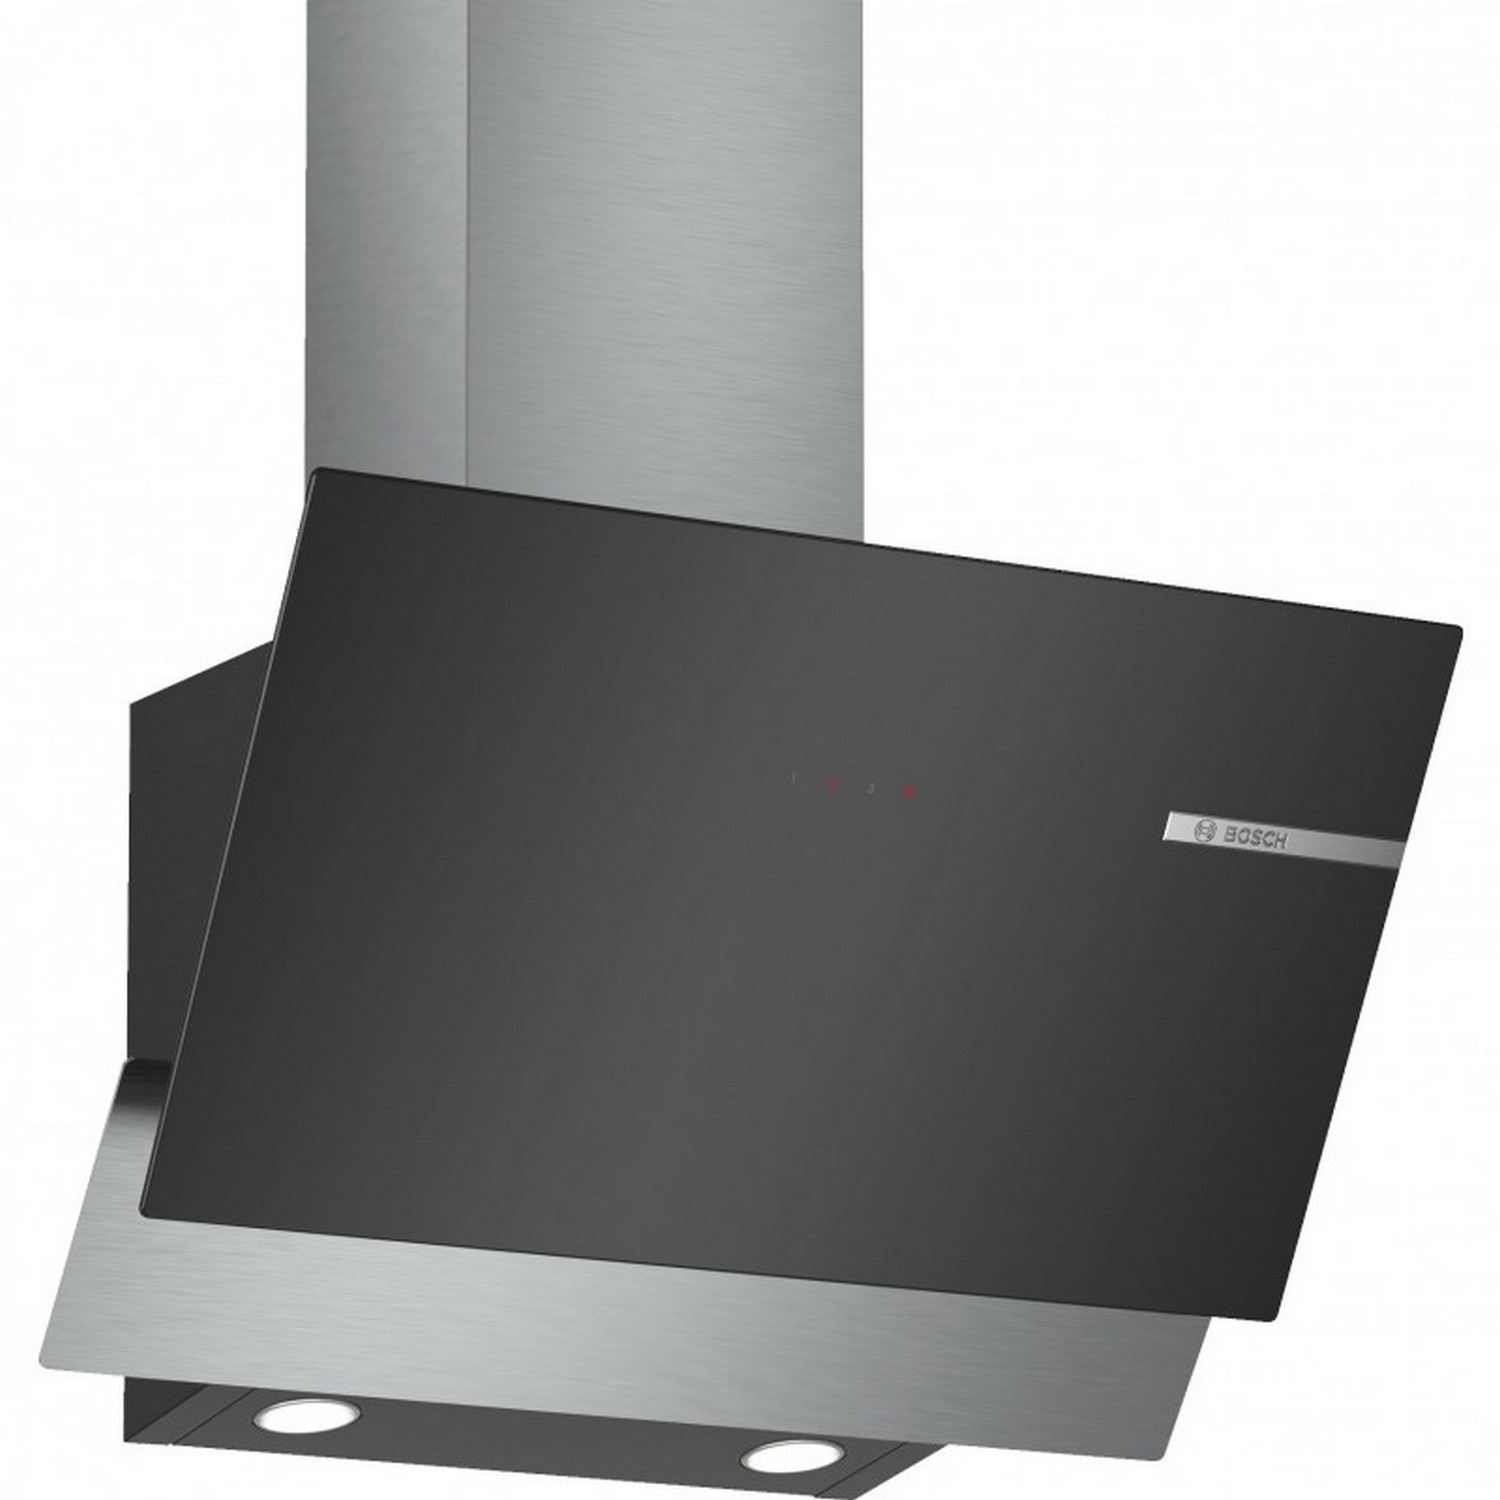 Кухонная вытяжка Bosch DWK66AJ60T в интернет-магазине, главное фото